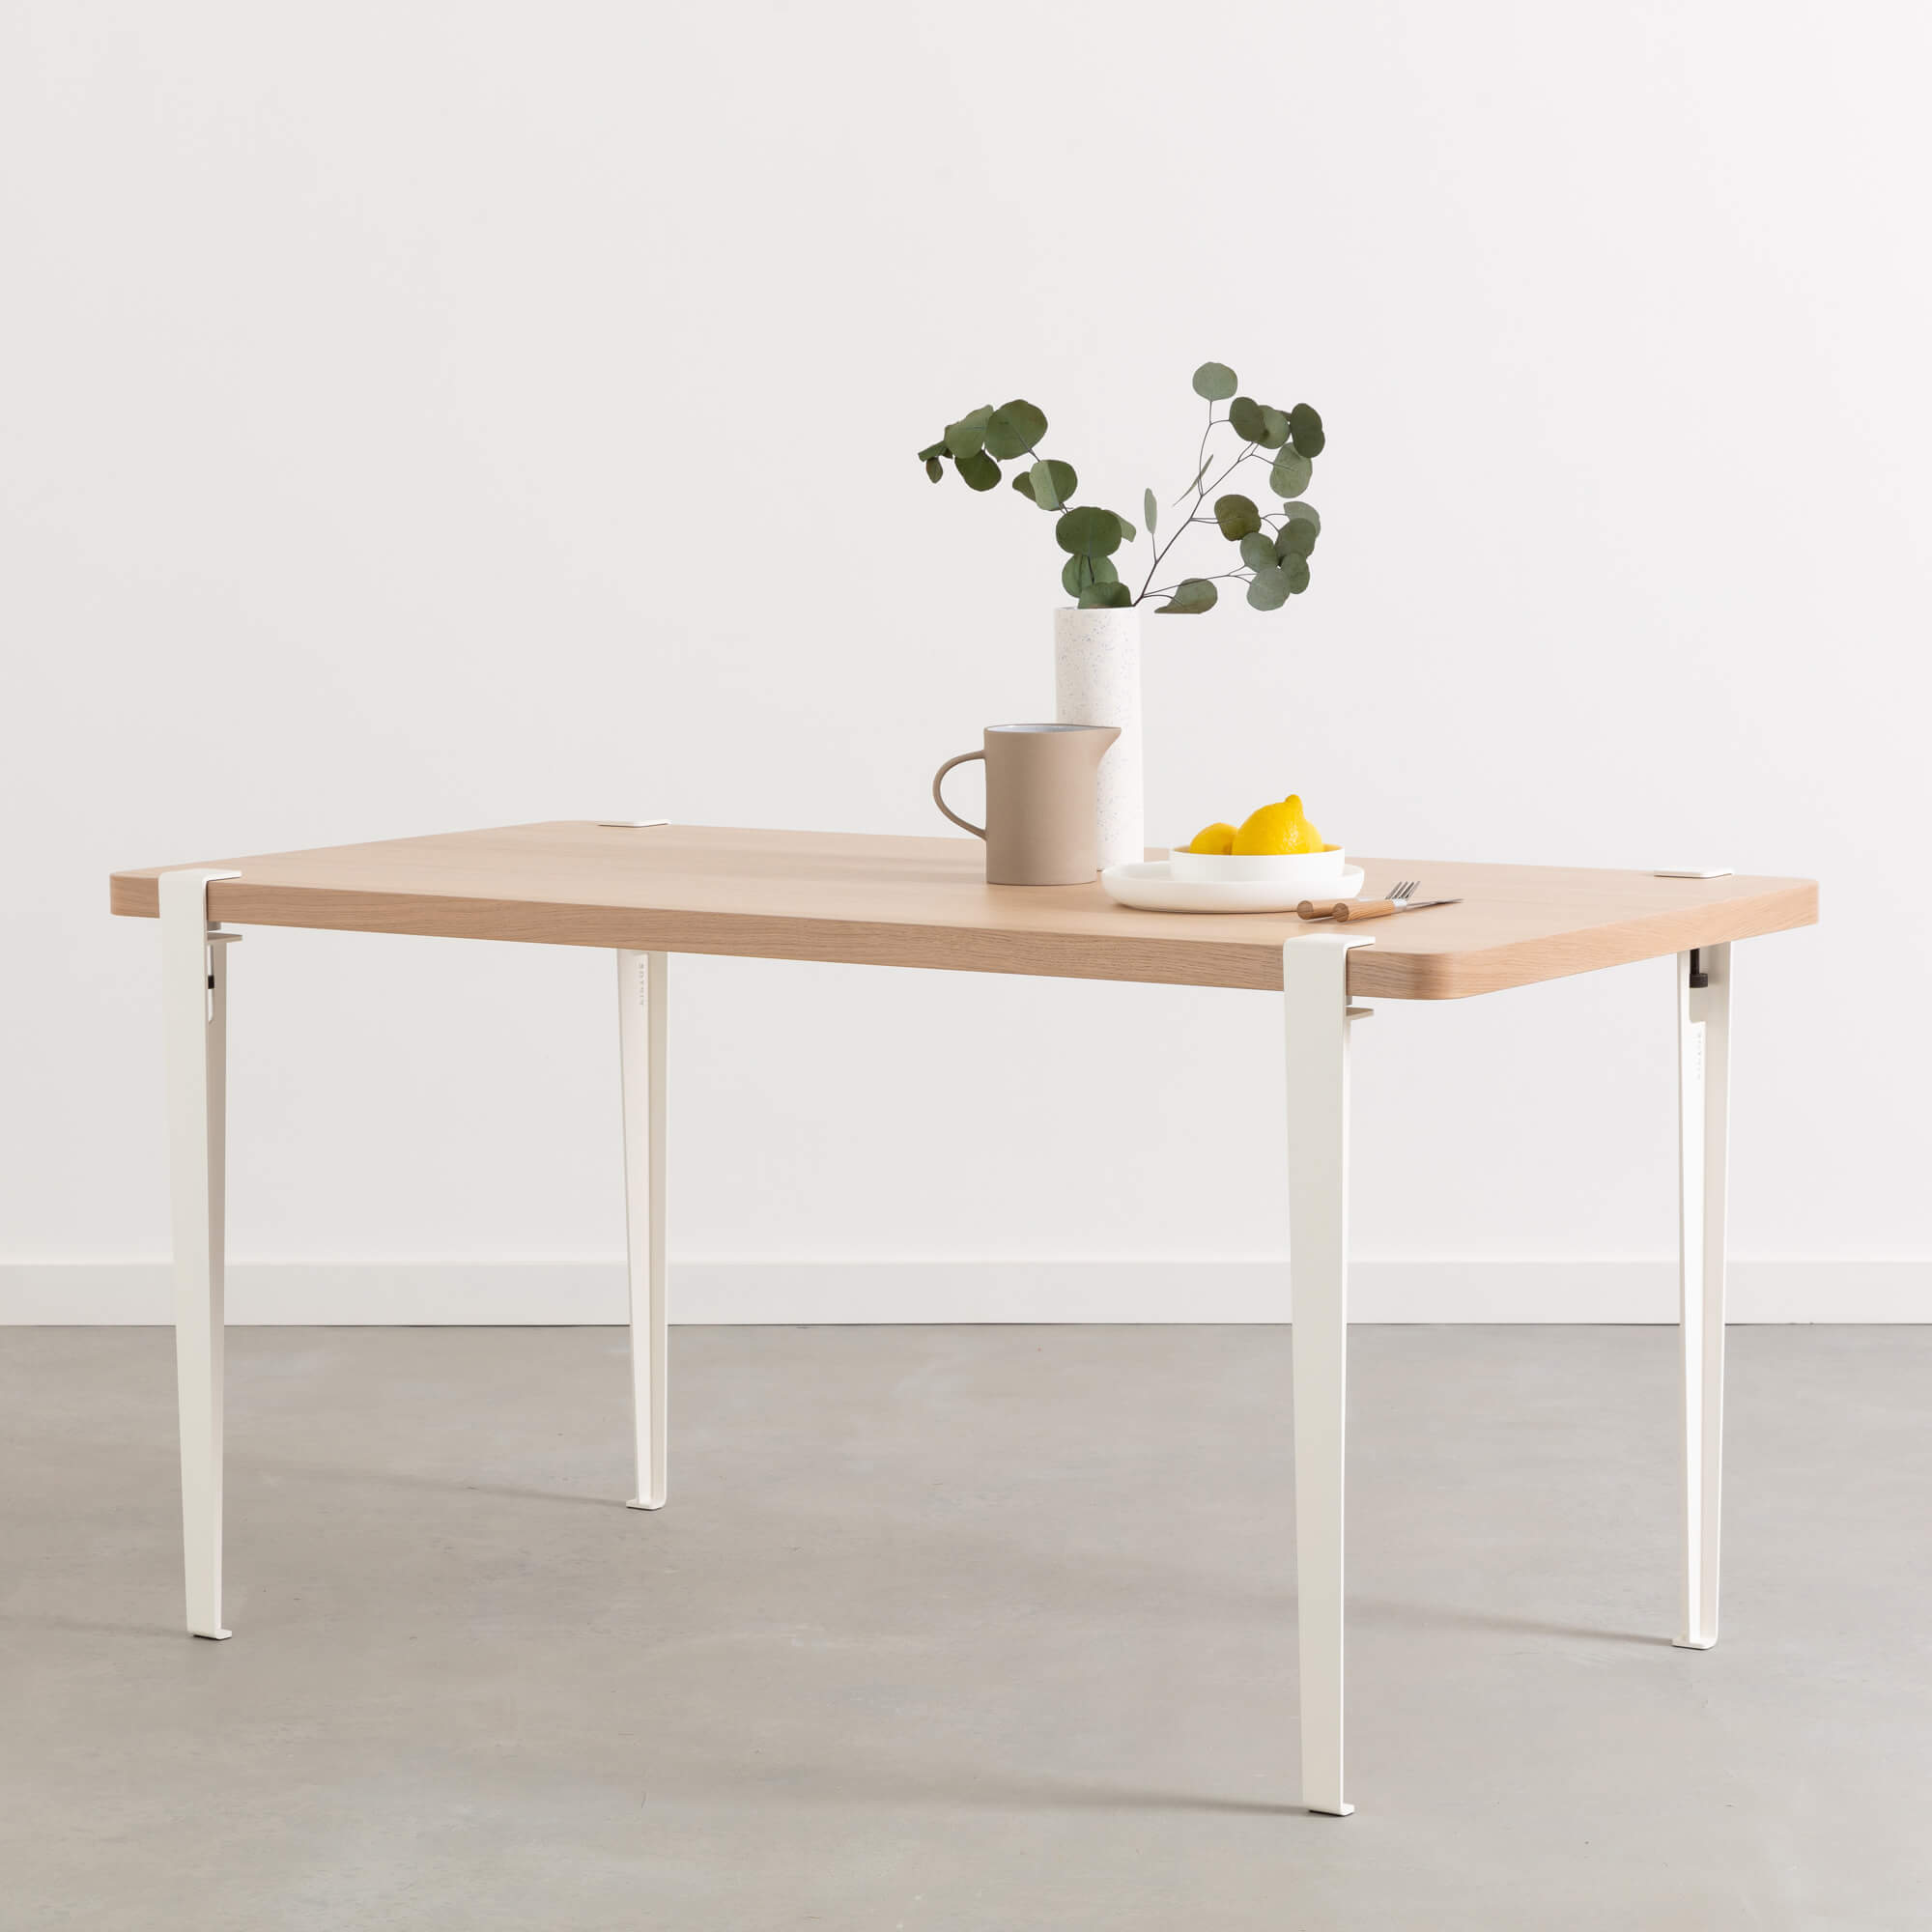 Forfalske USA Ejendomsret Design dining table leg, industrial and modern style